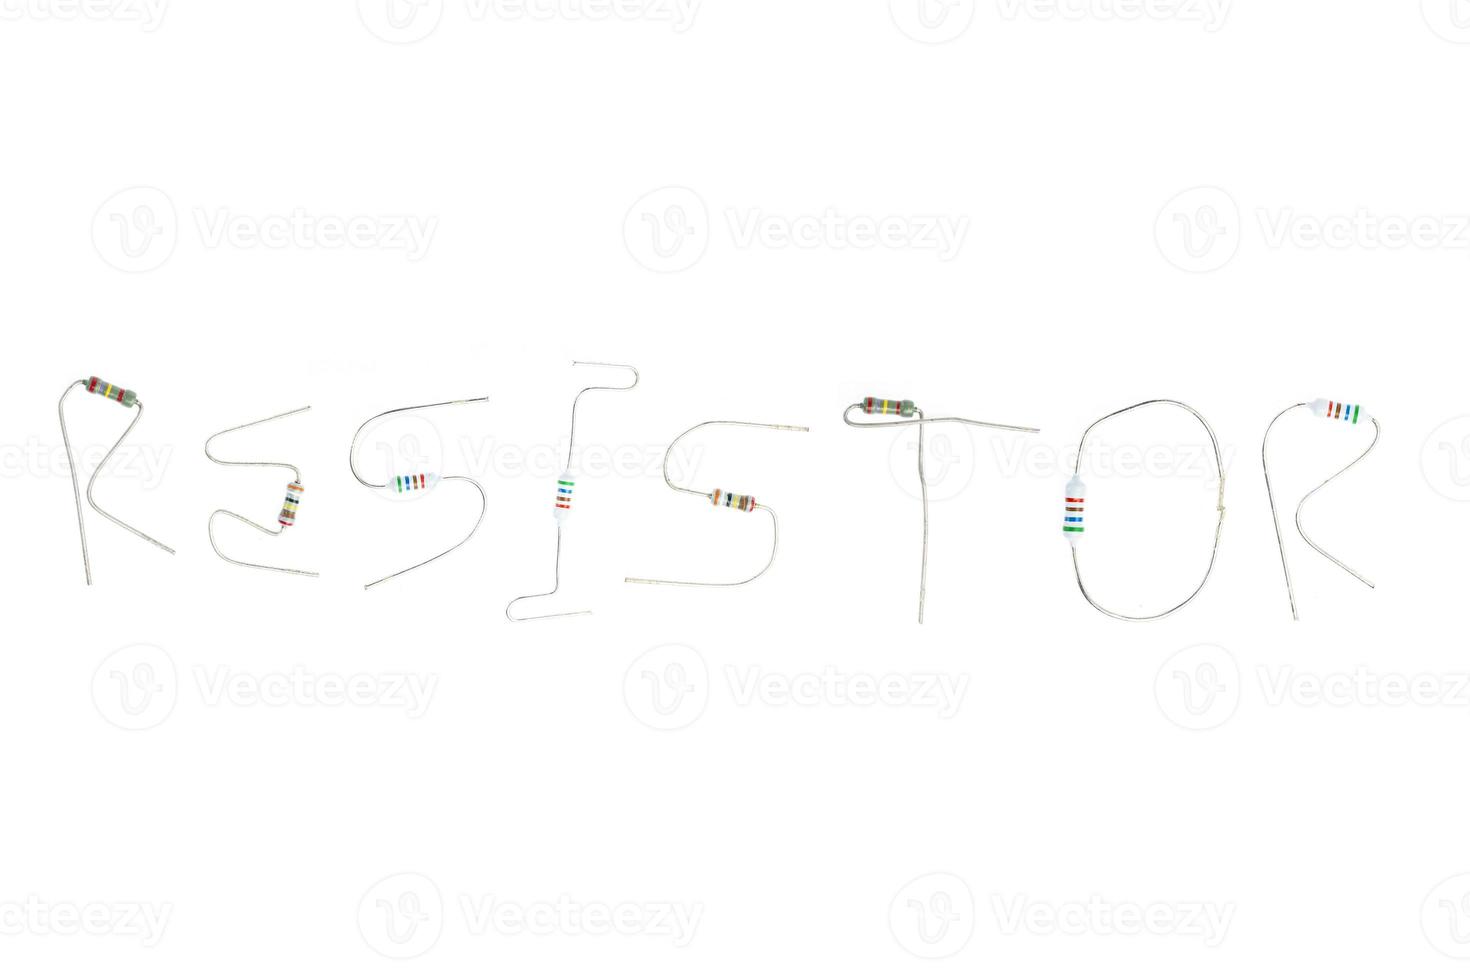 Making Words With Resistors, Resistor photo